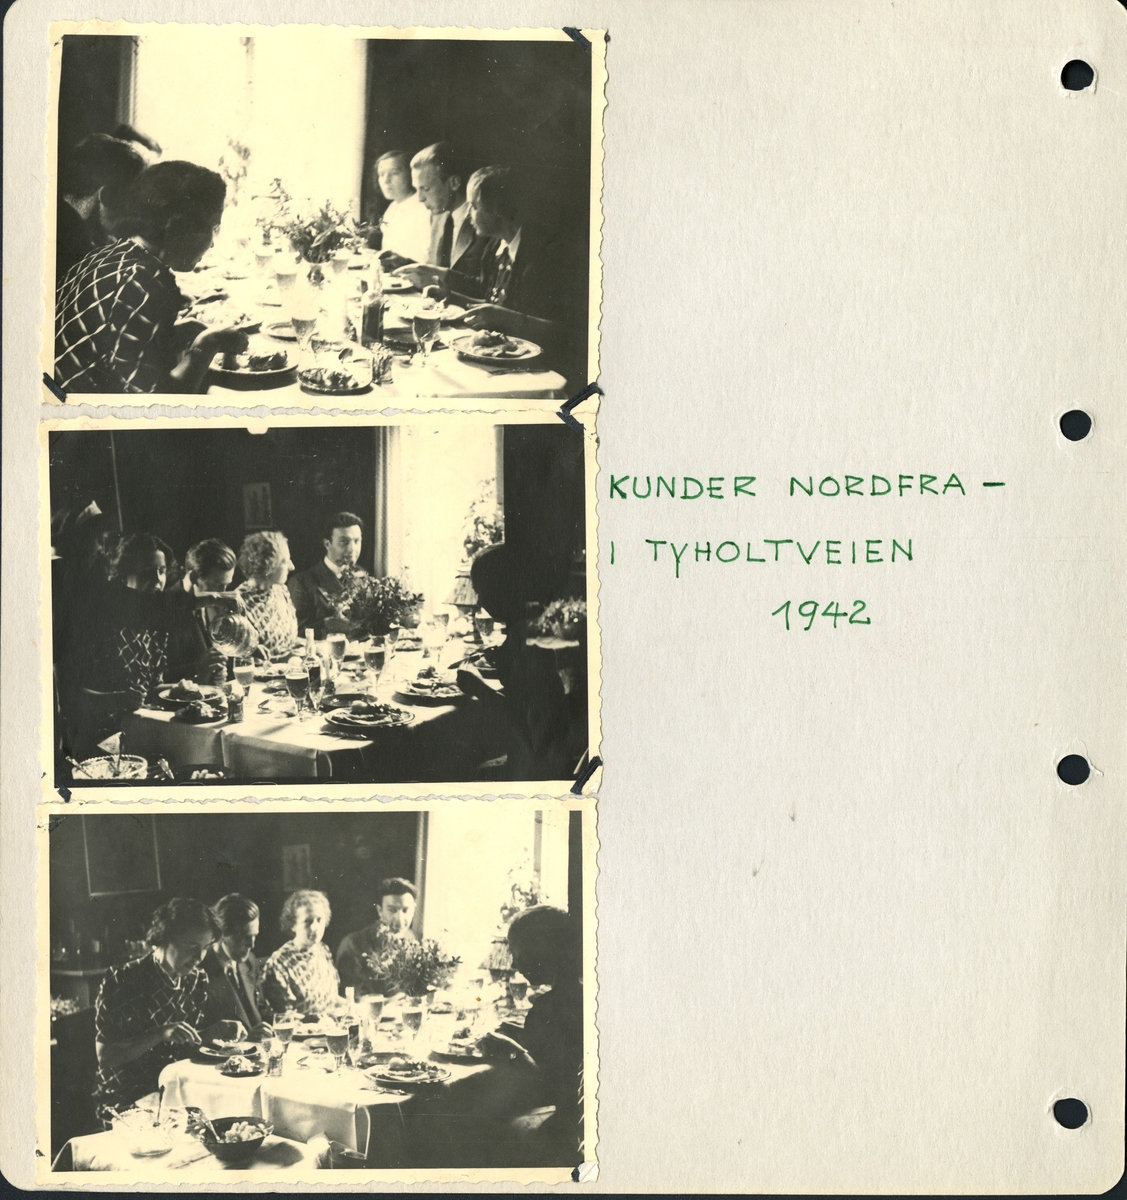 Fra familiealbum. Kunder nordfra på besøk i Tyholtveien hos Olaf T. Ranum. Mest sannsynlig Ranum som ved vinduet, og Gudrun Ranum ved siden av han, samt Ingeborg Ranum som sitter ytterst.